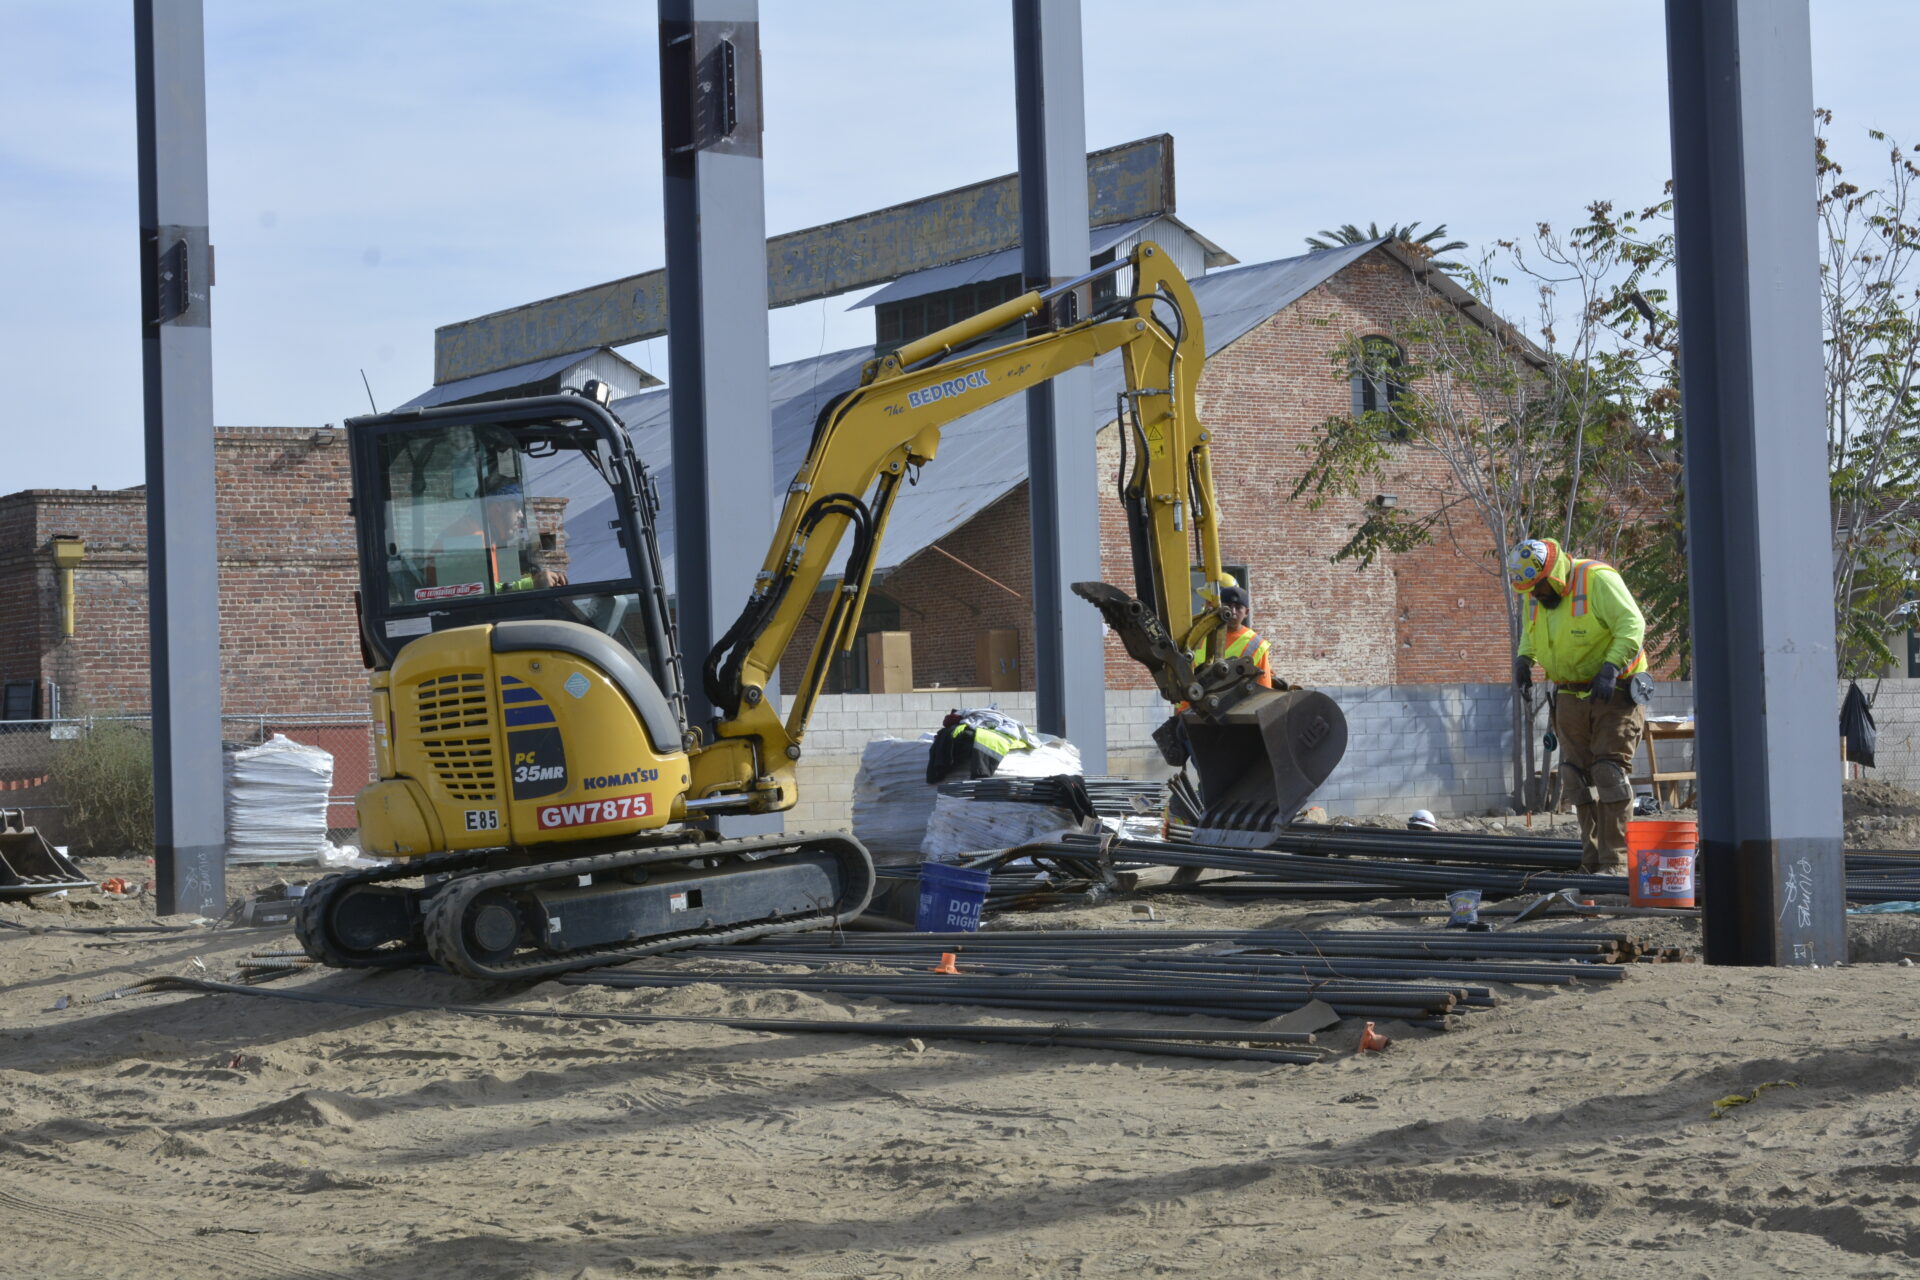 Construction equipment lifting up materials